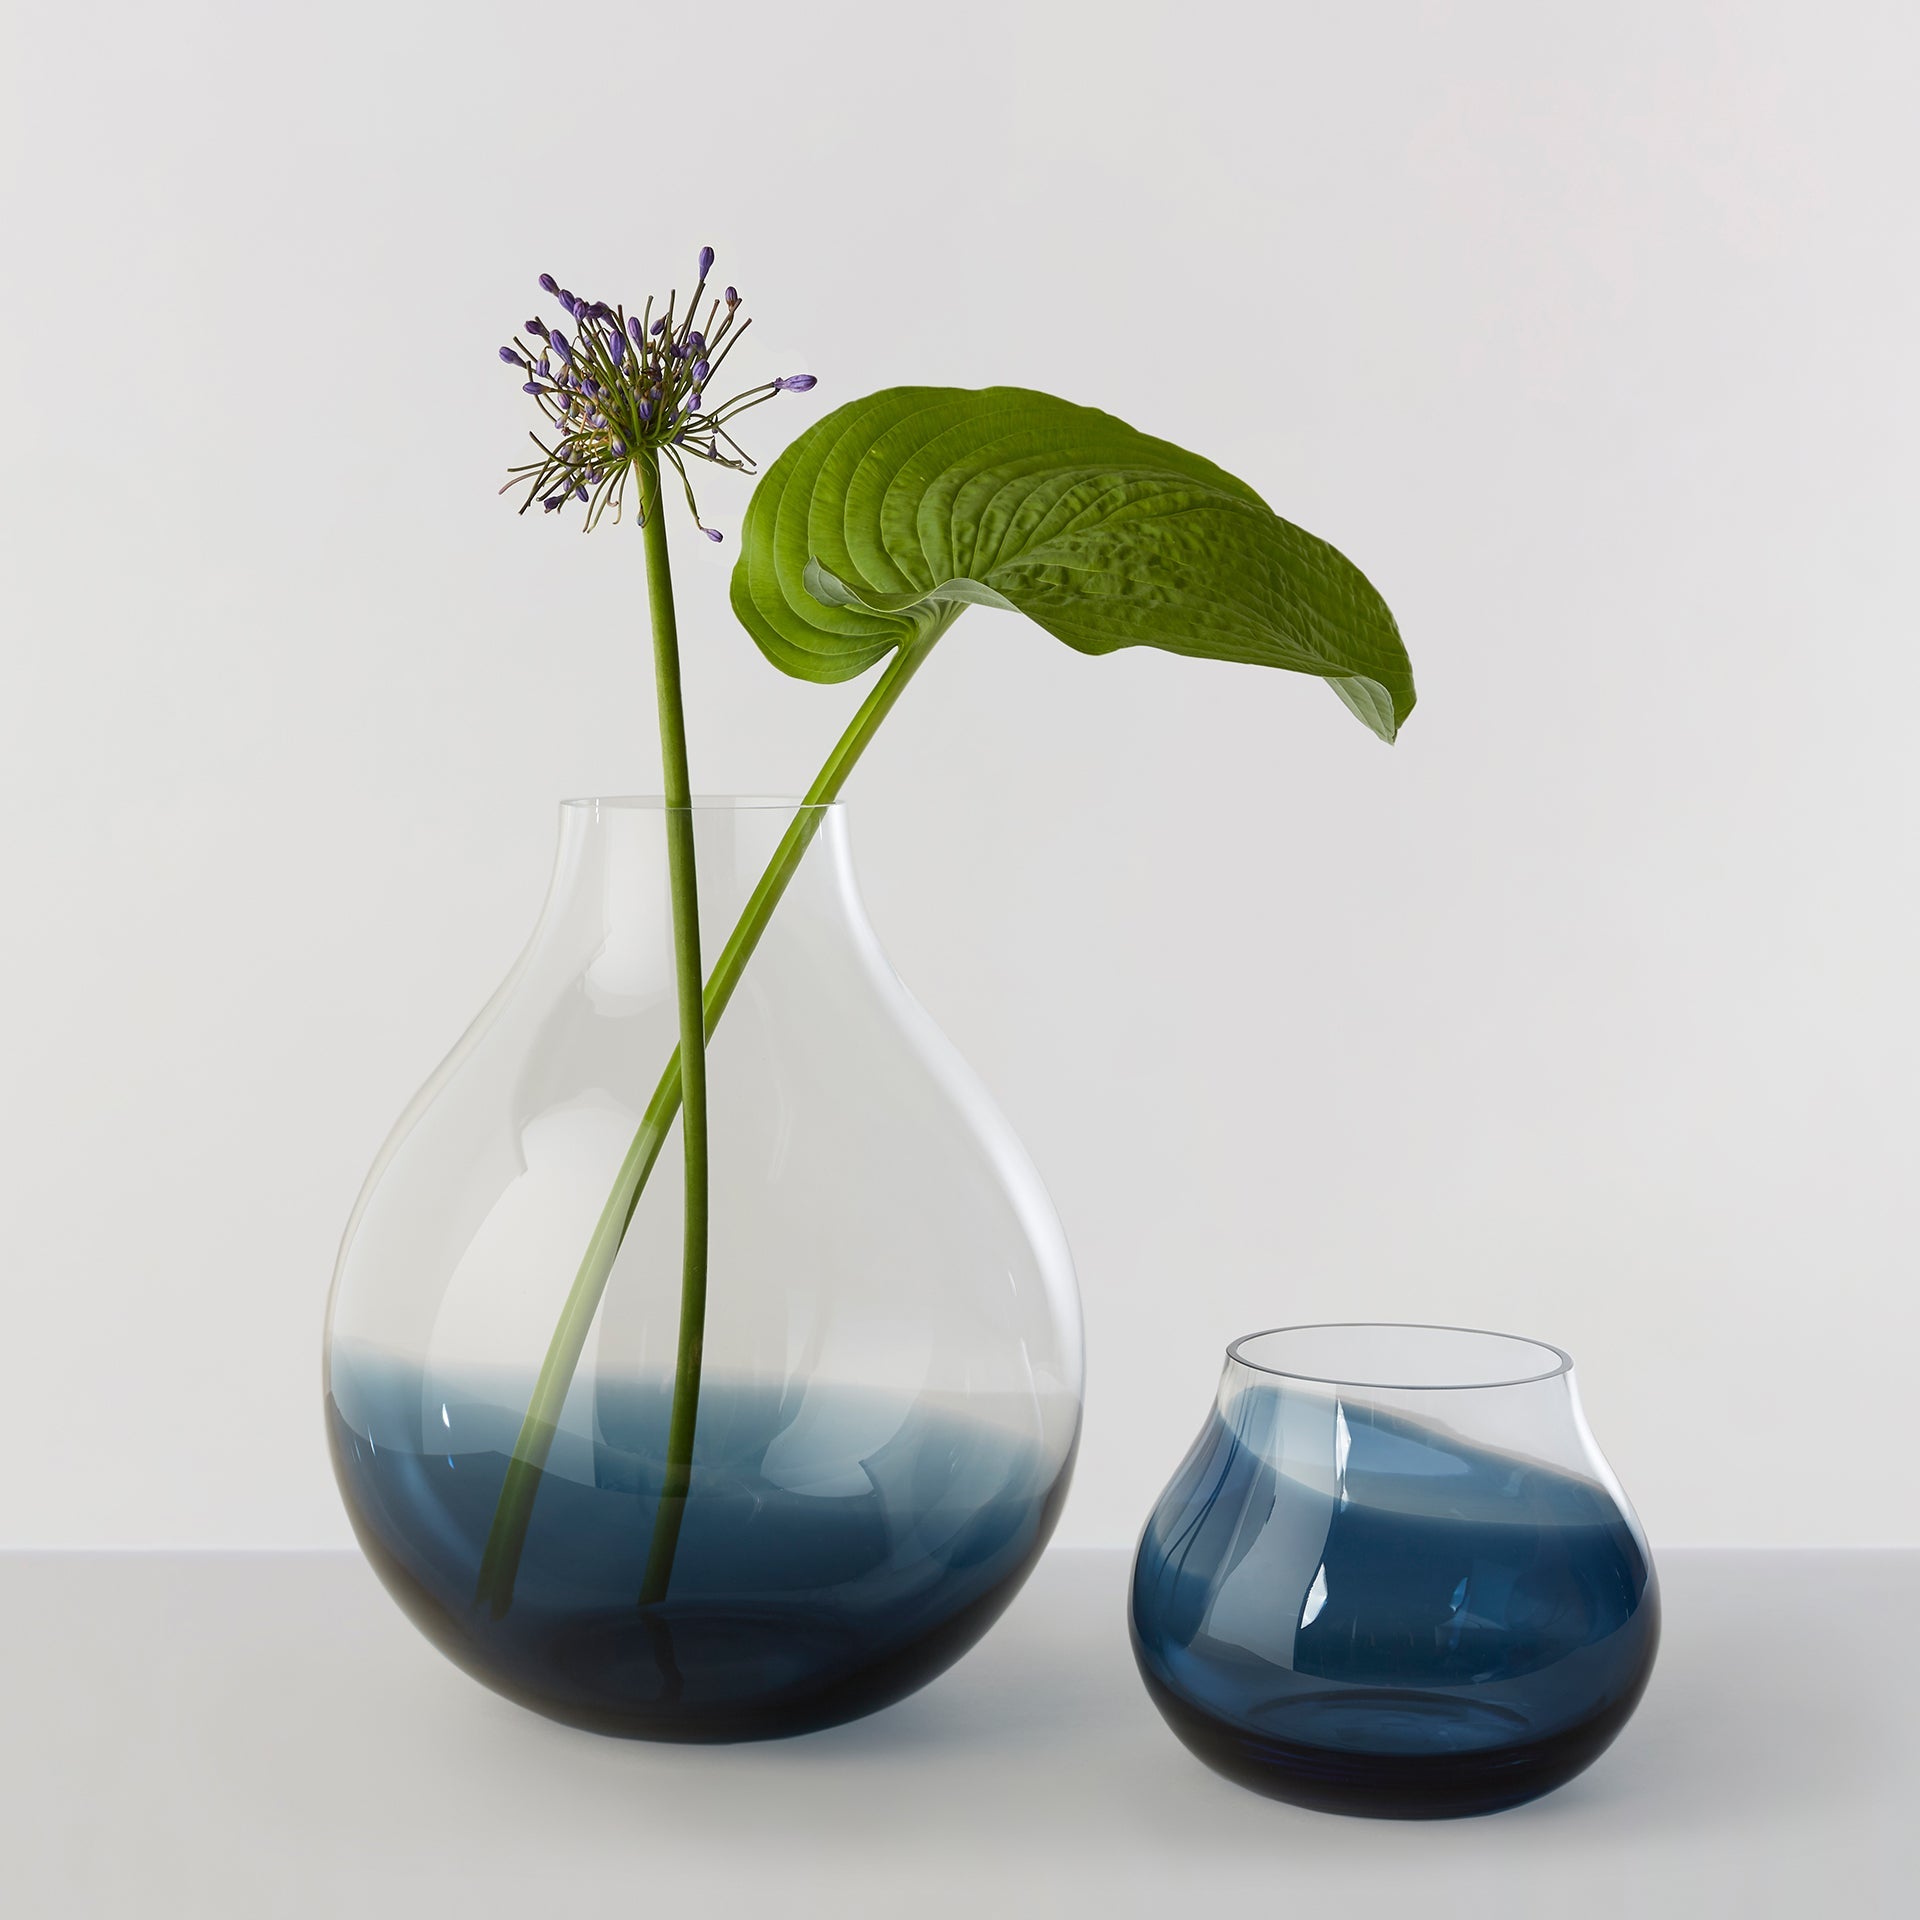 Billede af Flower Vase no. 23 - Indigo blue